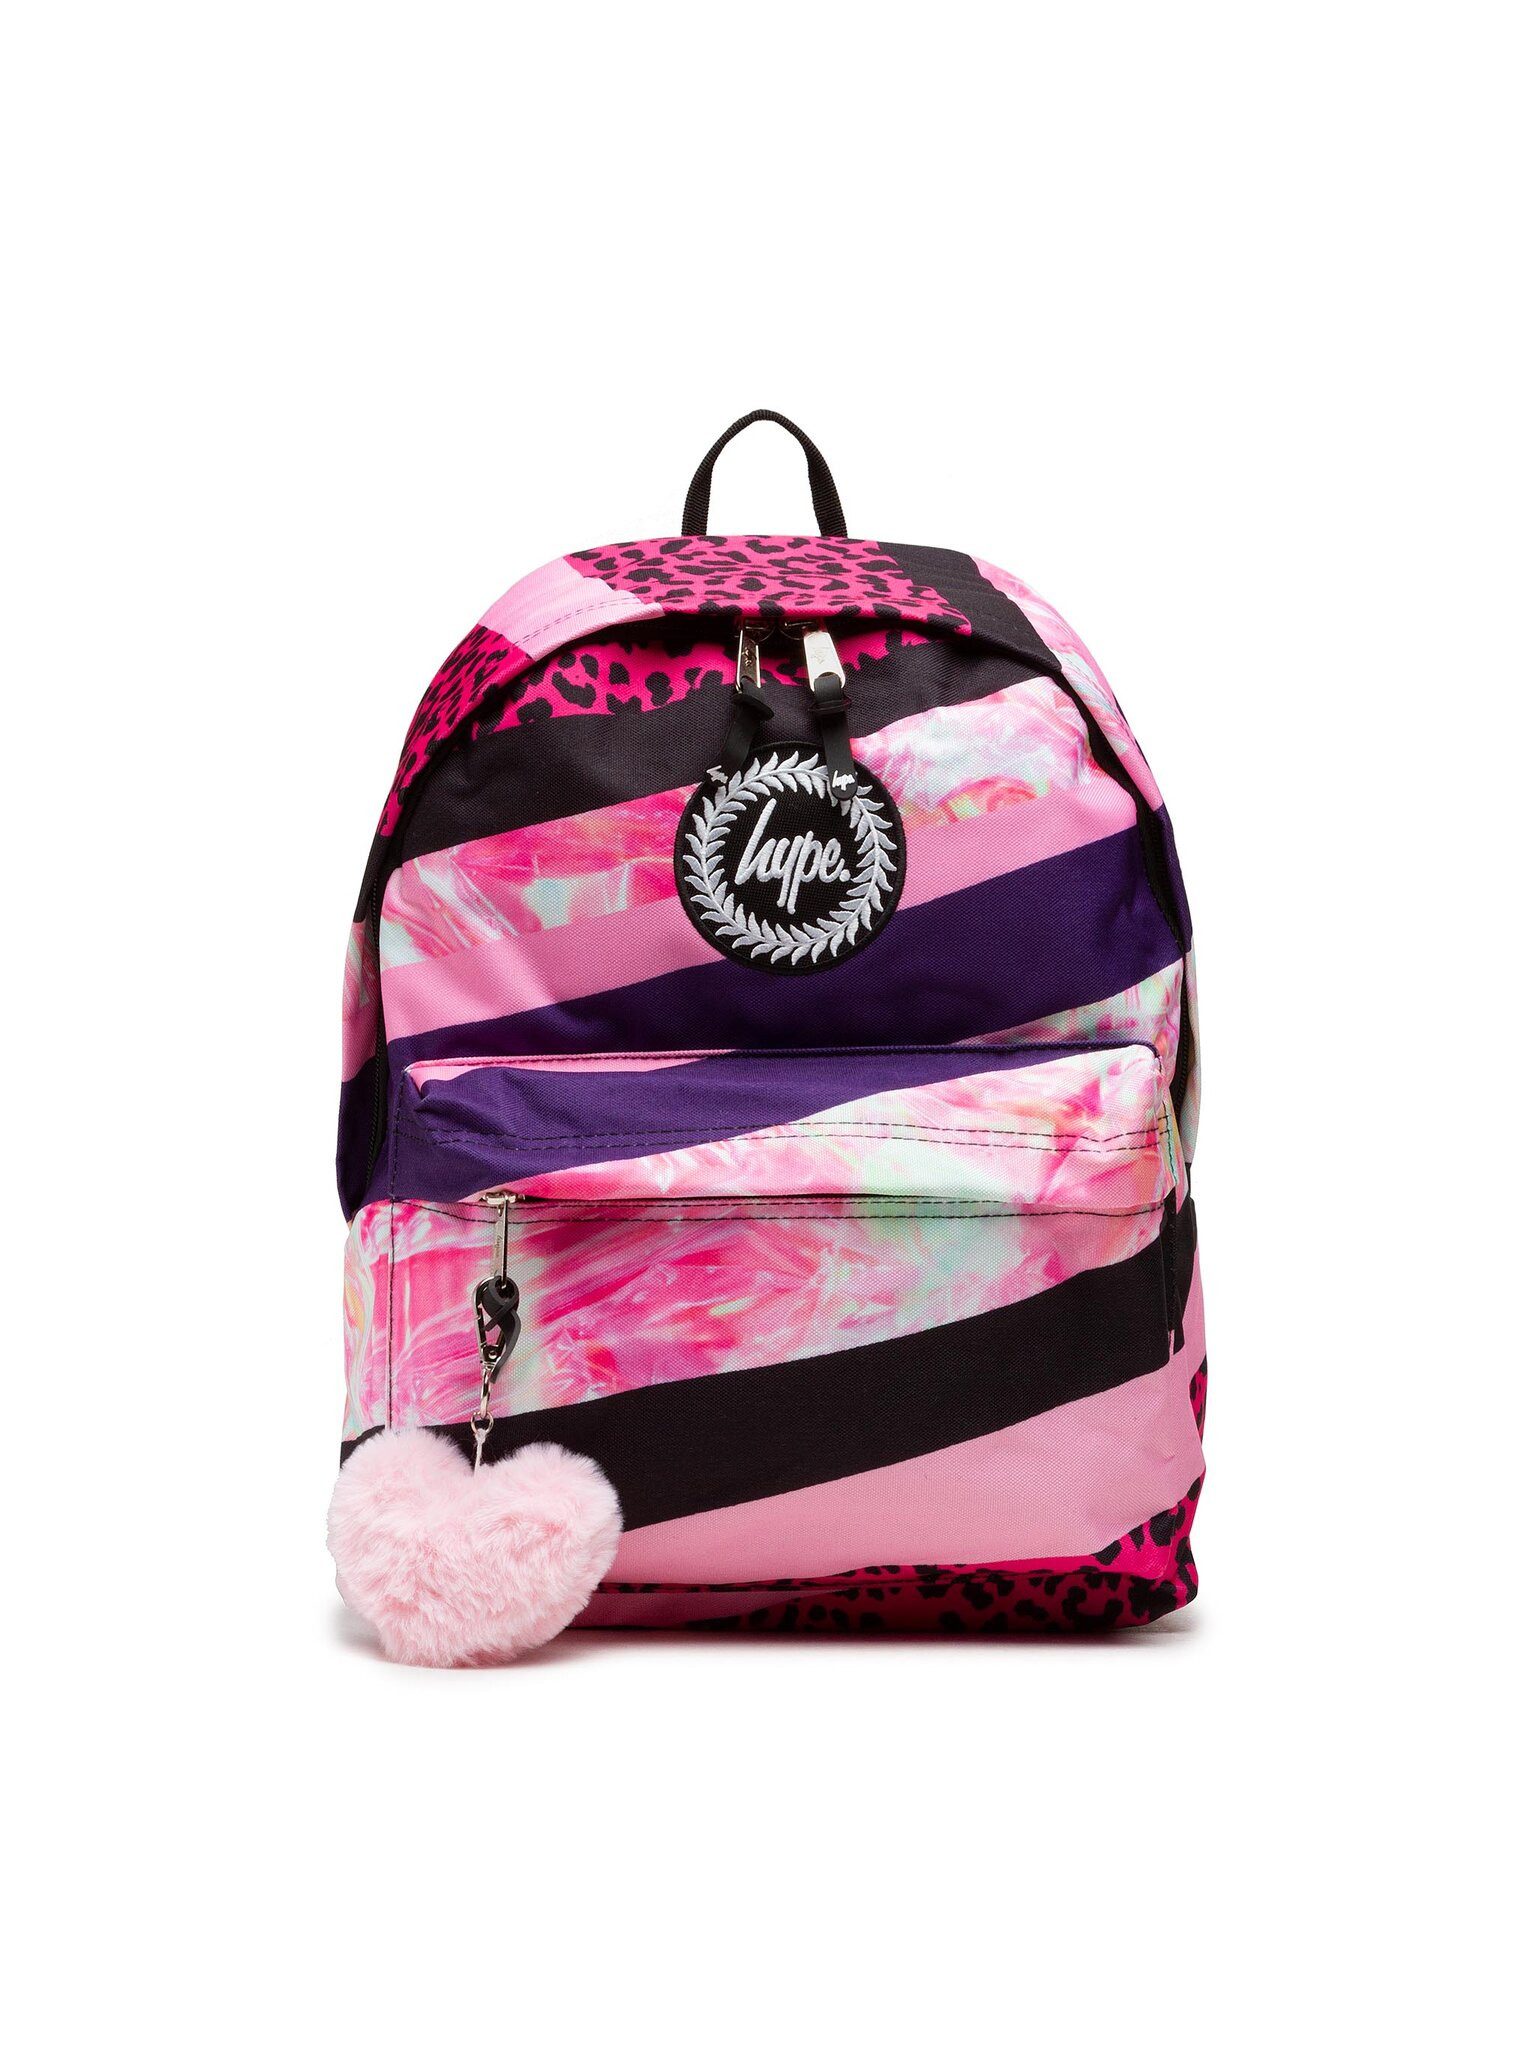 Hype Freizeitrucksack Rucksack Dark Pink Stripe Crest Backpack YVLR-653 Black/Pink